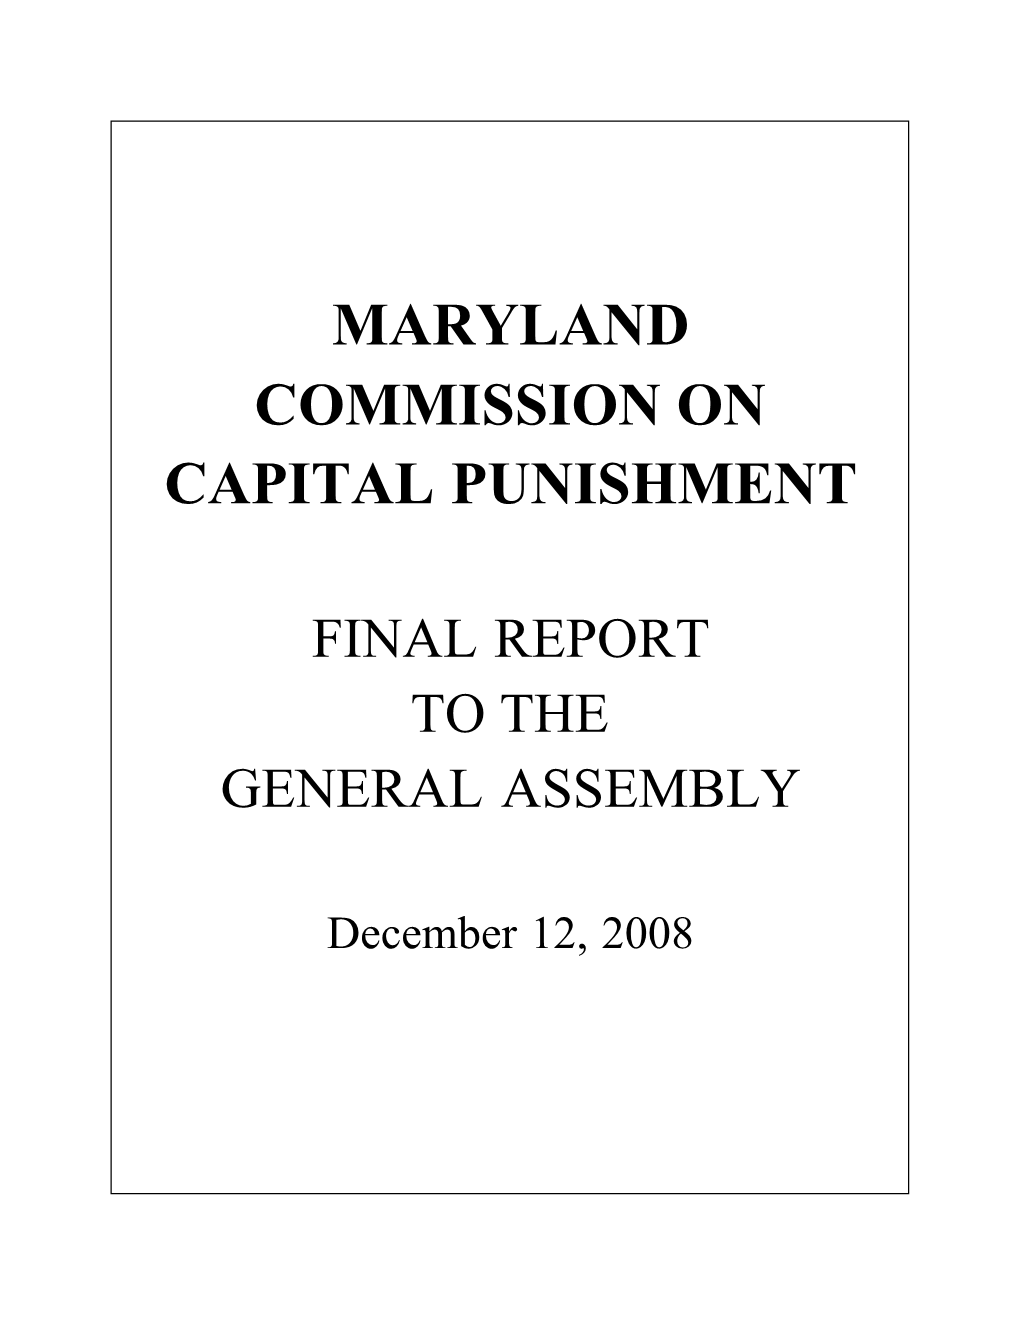 Maryland Commission on Capital Punishment